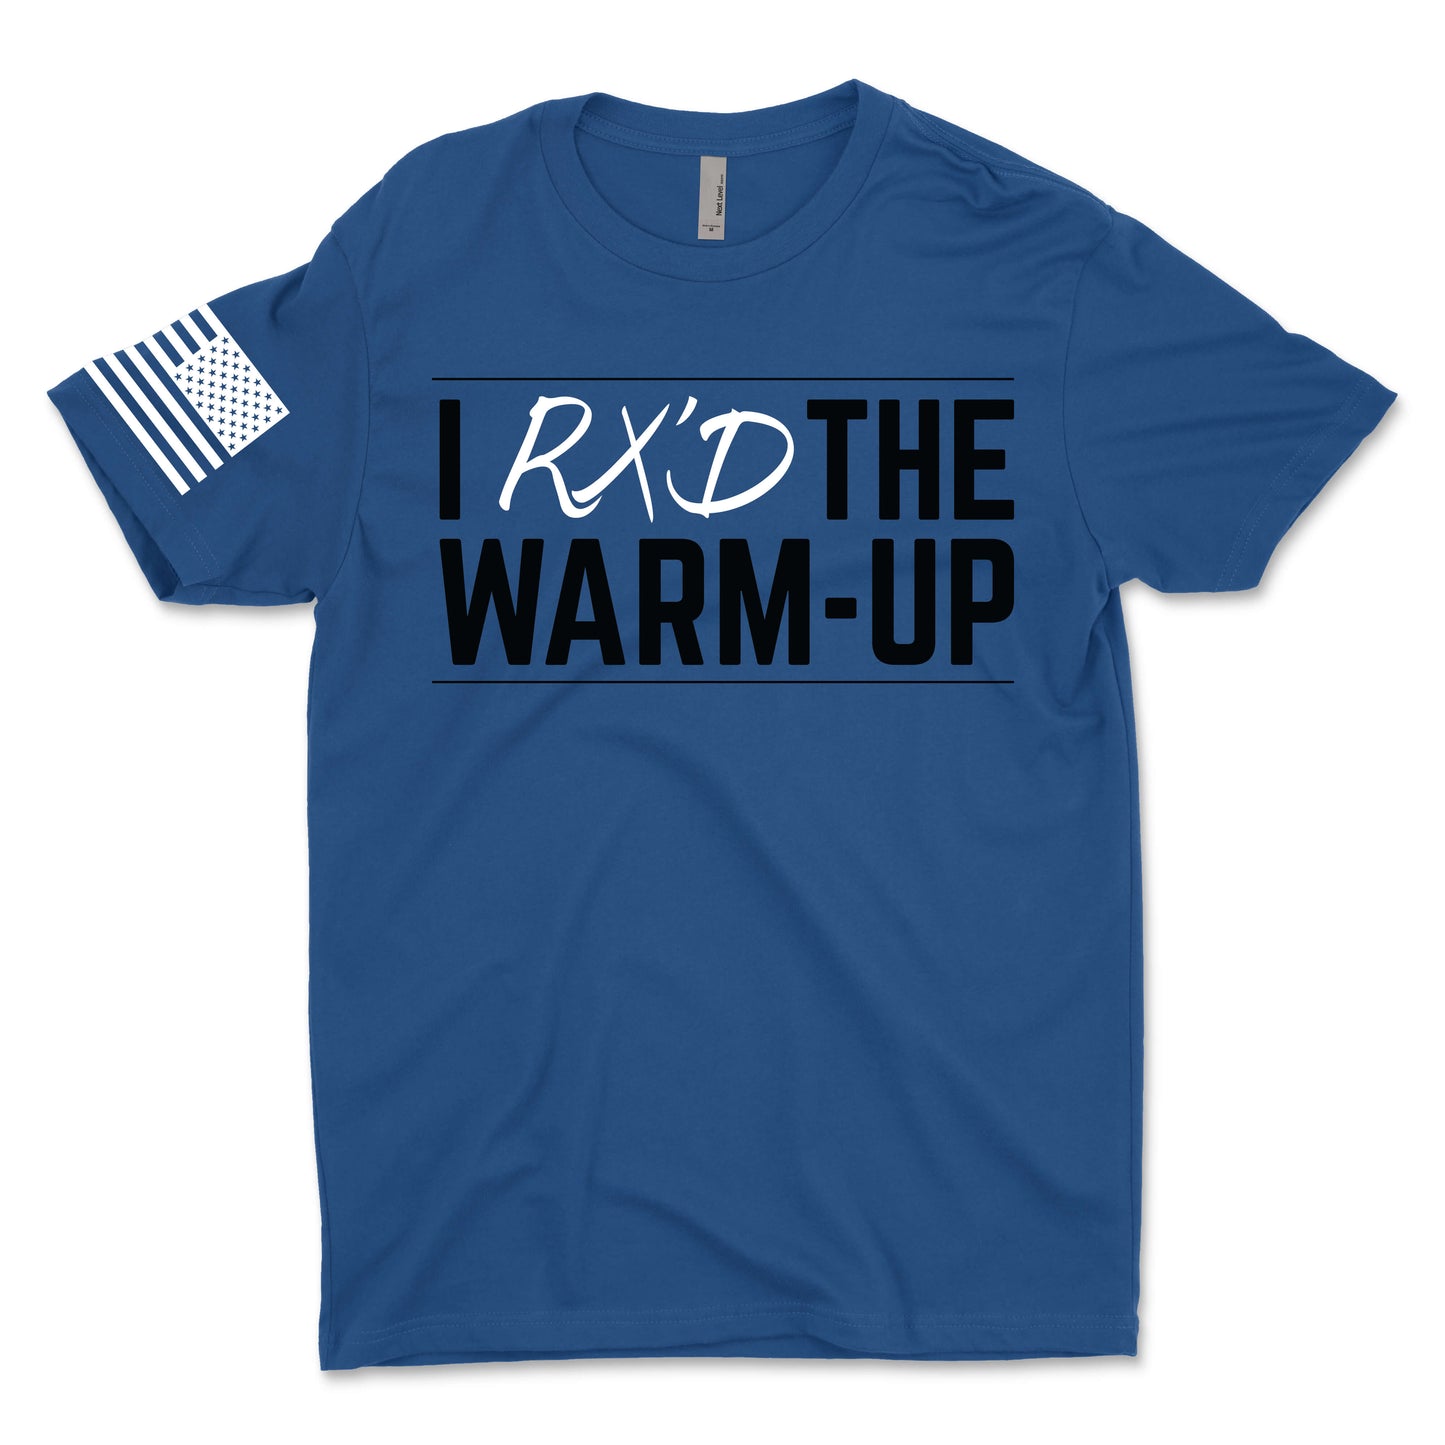 I Rx'd The Warm Up Men's T-Shirt